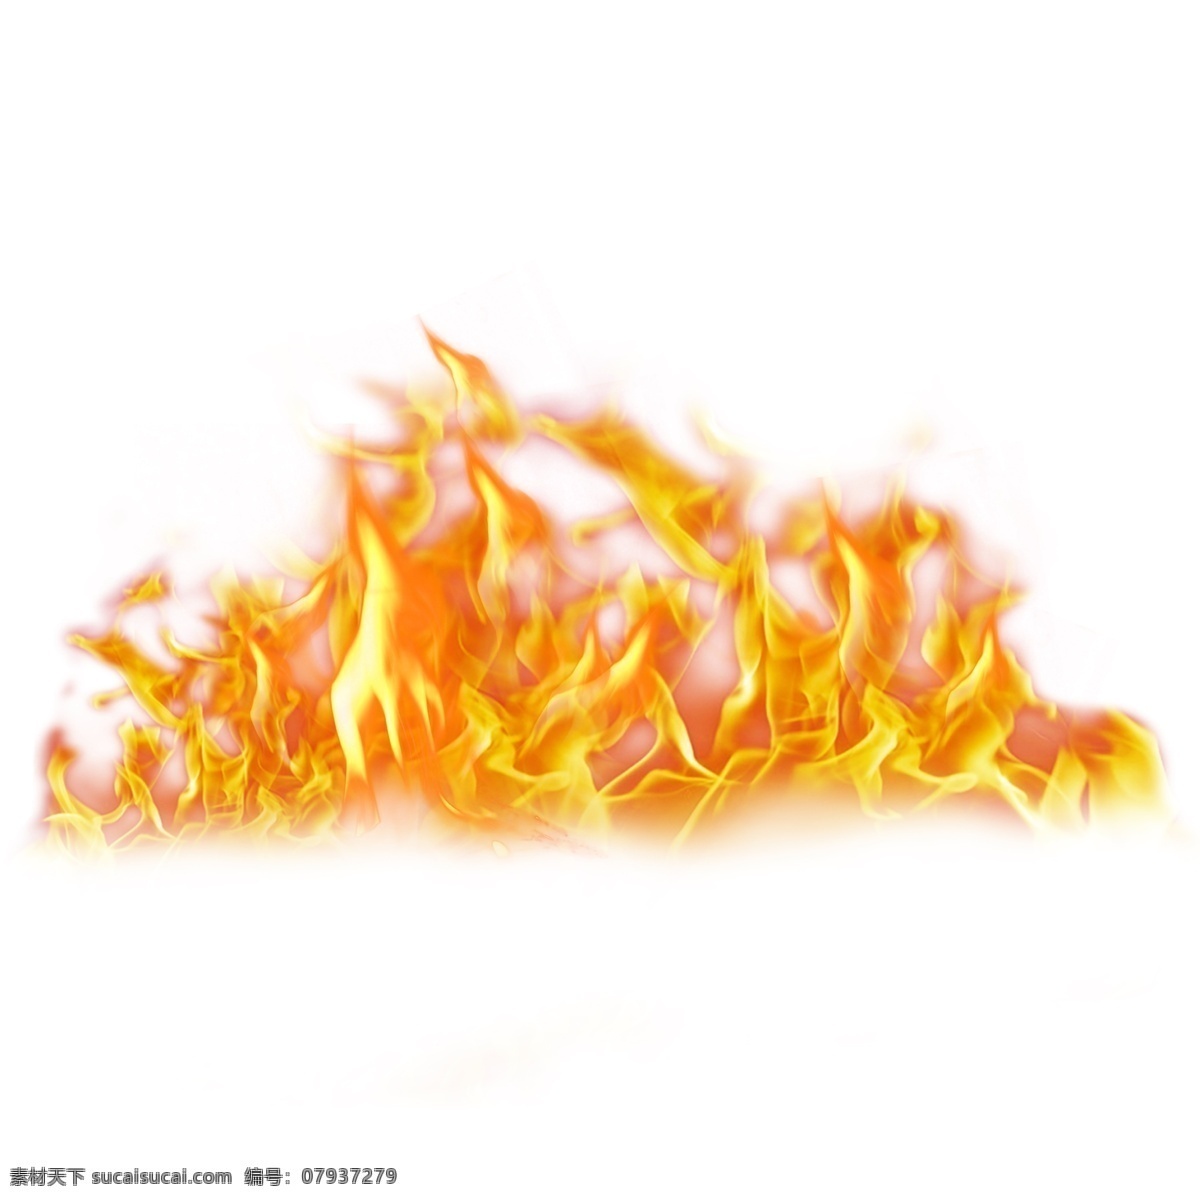 黄色火焰图片 火焰 火焰元素 火焰素材 火苗 火 火元素 火素材 火焰装饰 火苗装饰 火苗素材 大火 大火元素 大火素材 元素设计 动漫动画 风景漫画